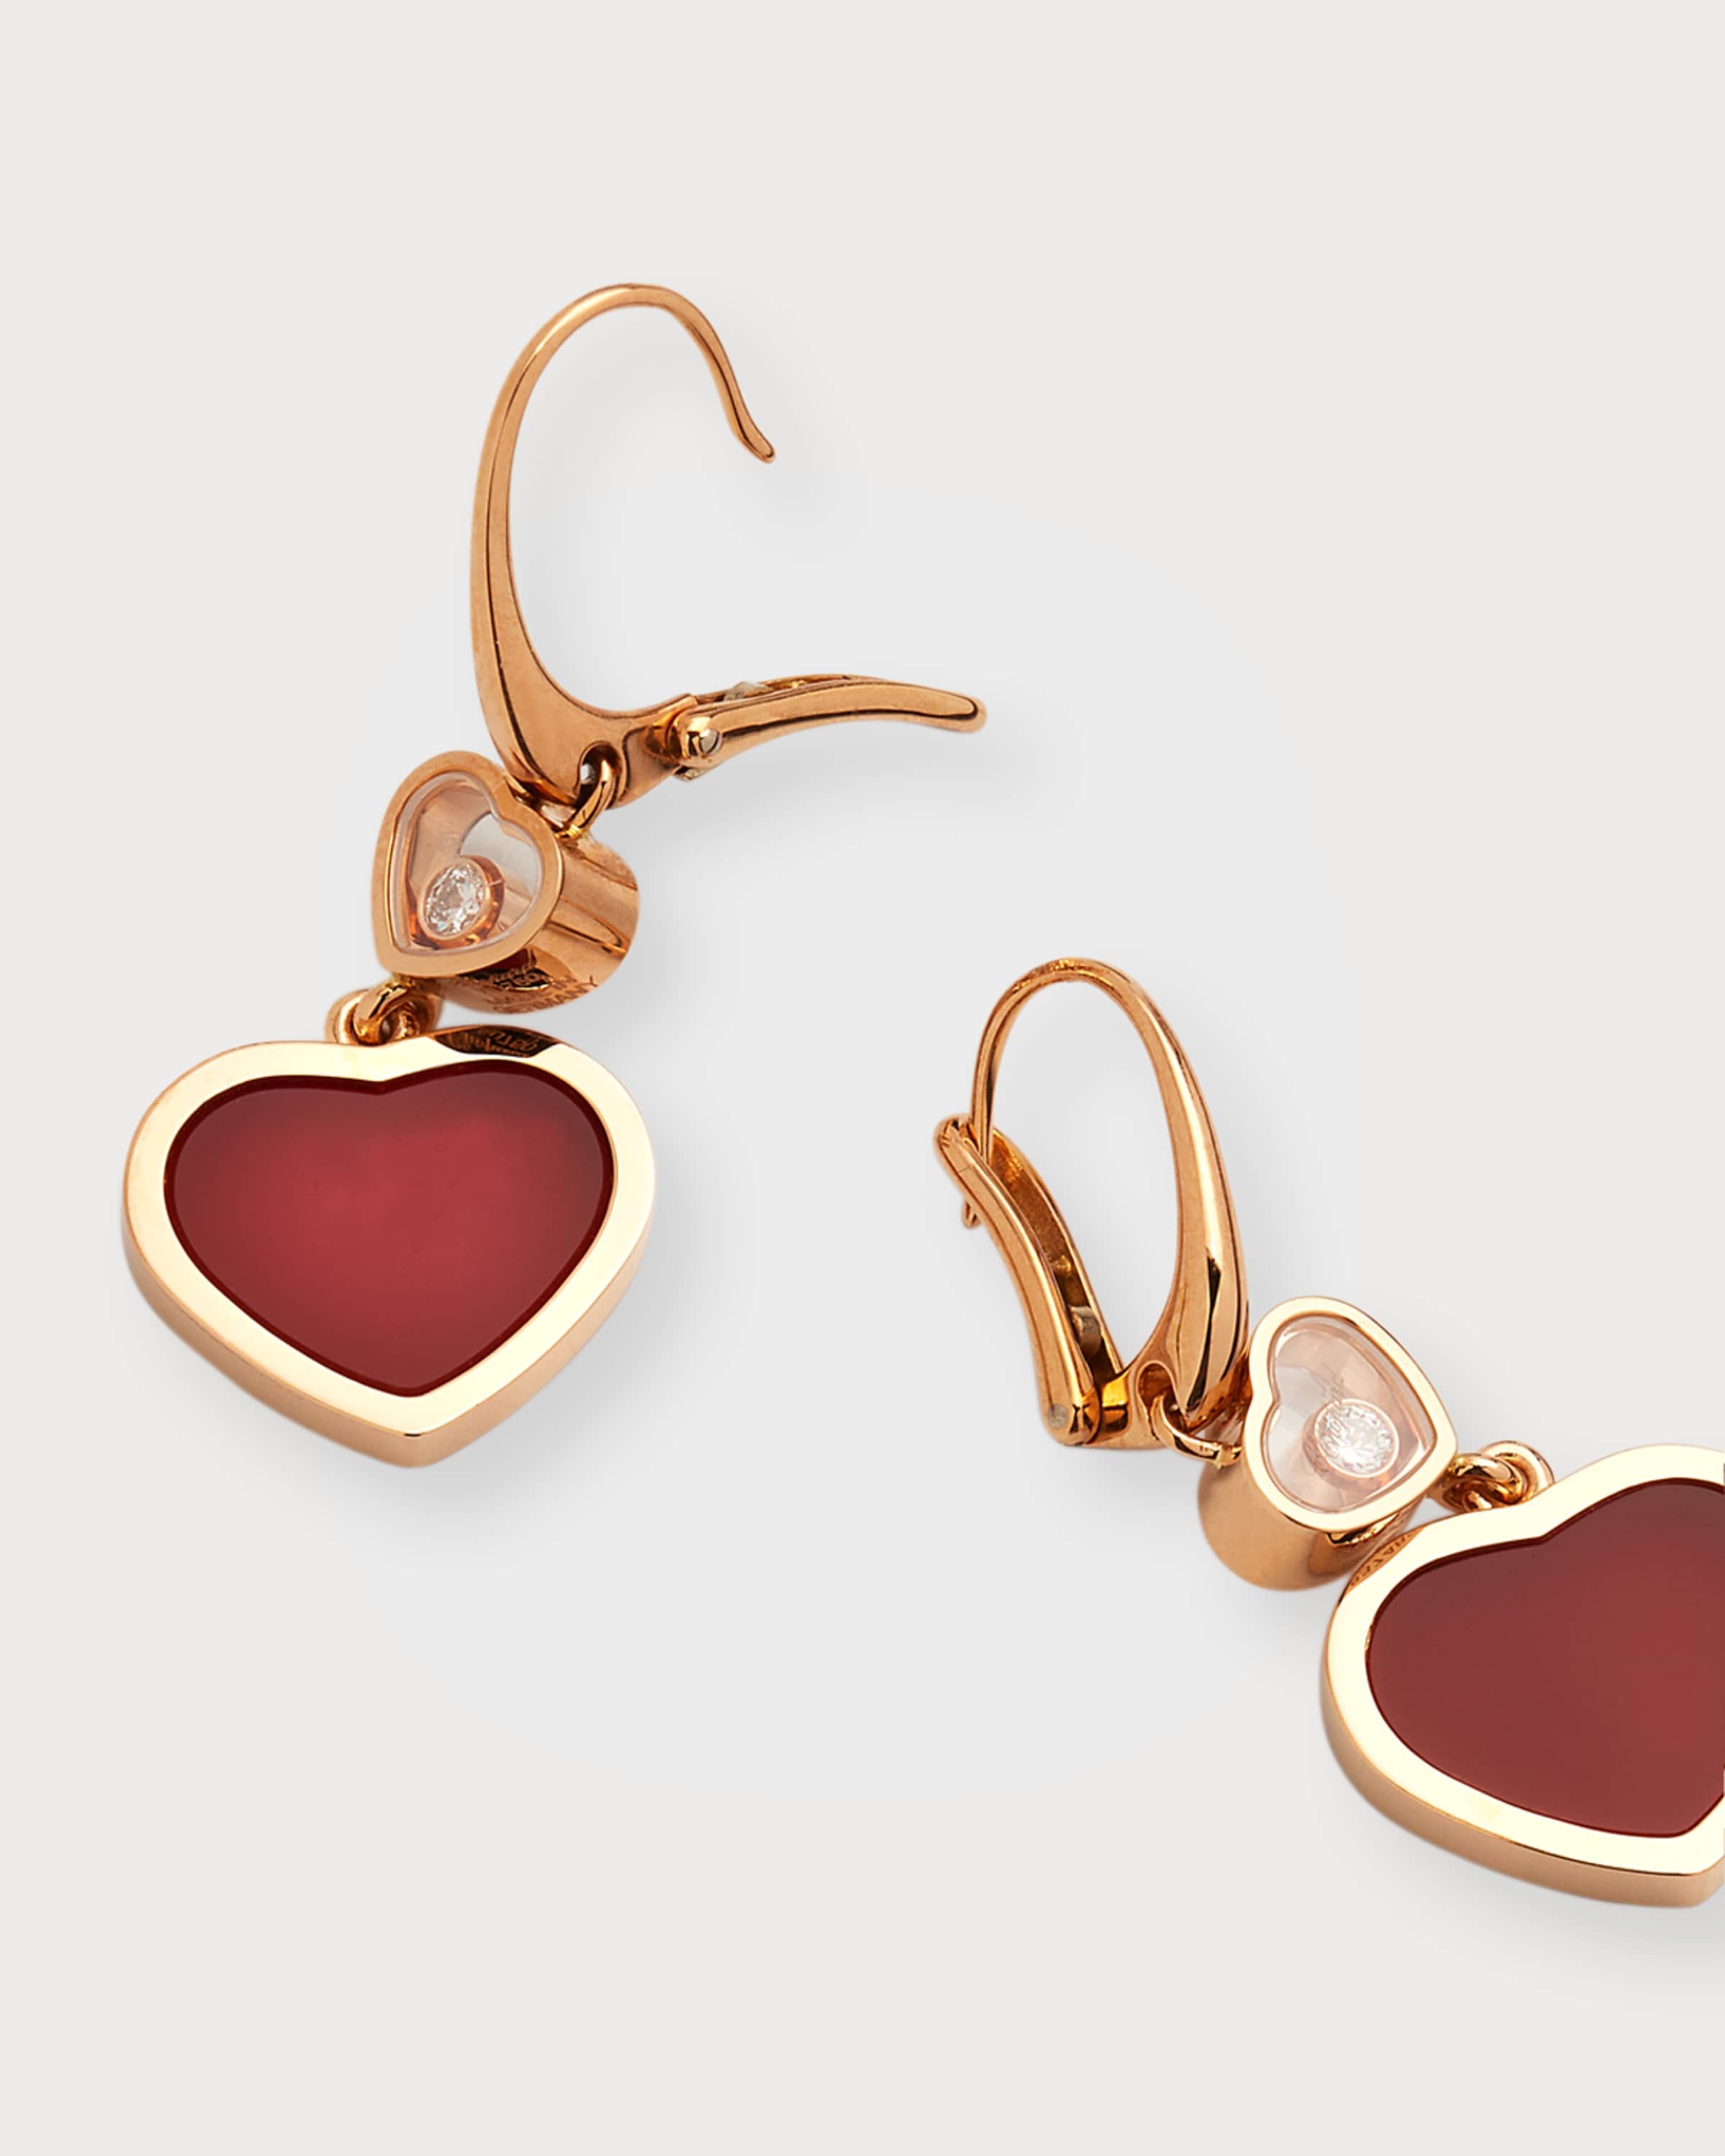 Happy Hearts 18K Rose Gold Carnelian & Diamond Earrings - 3